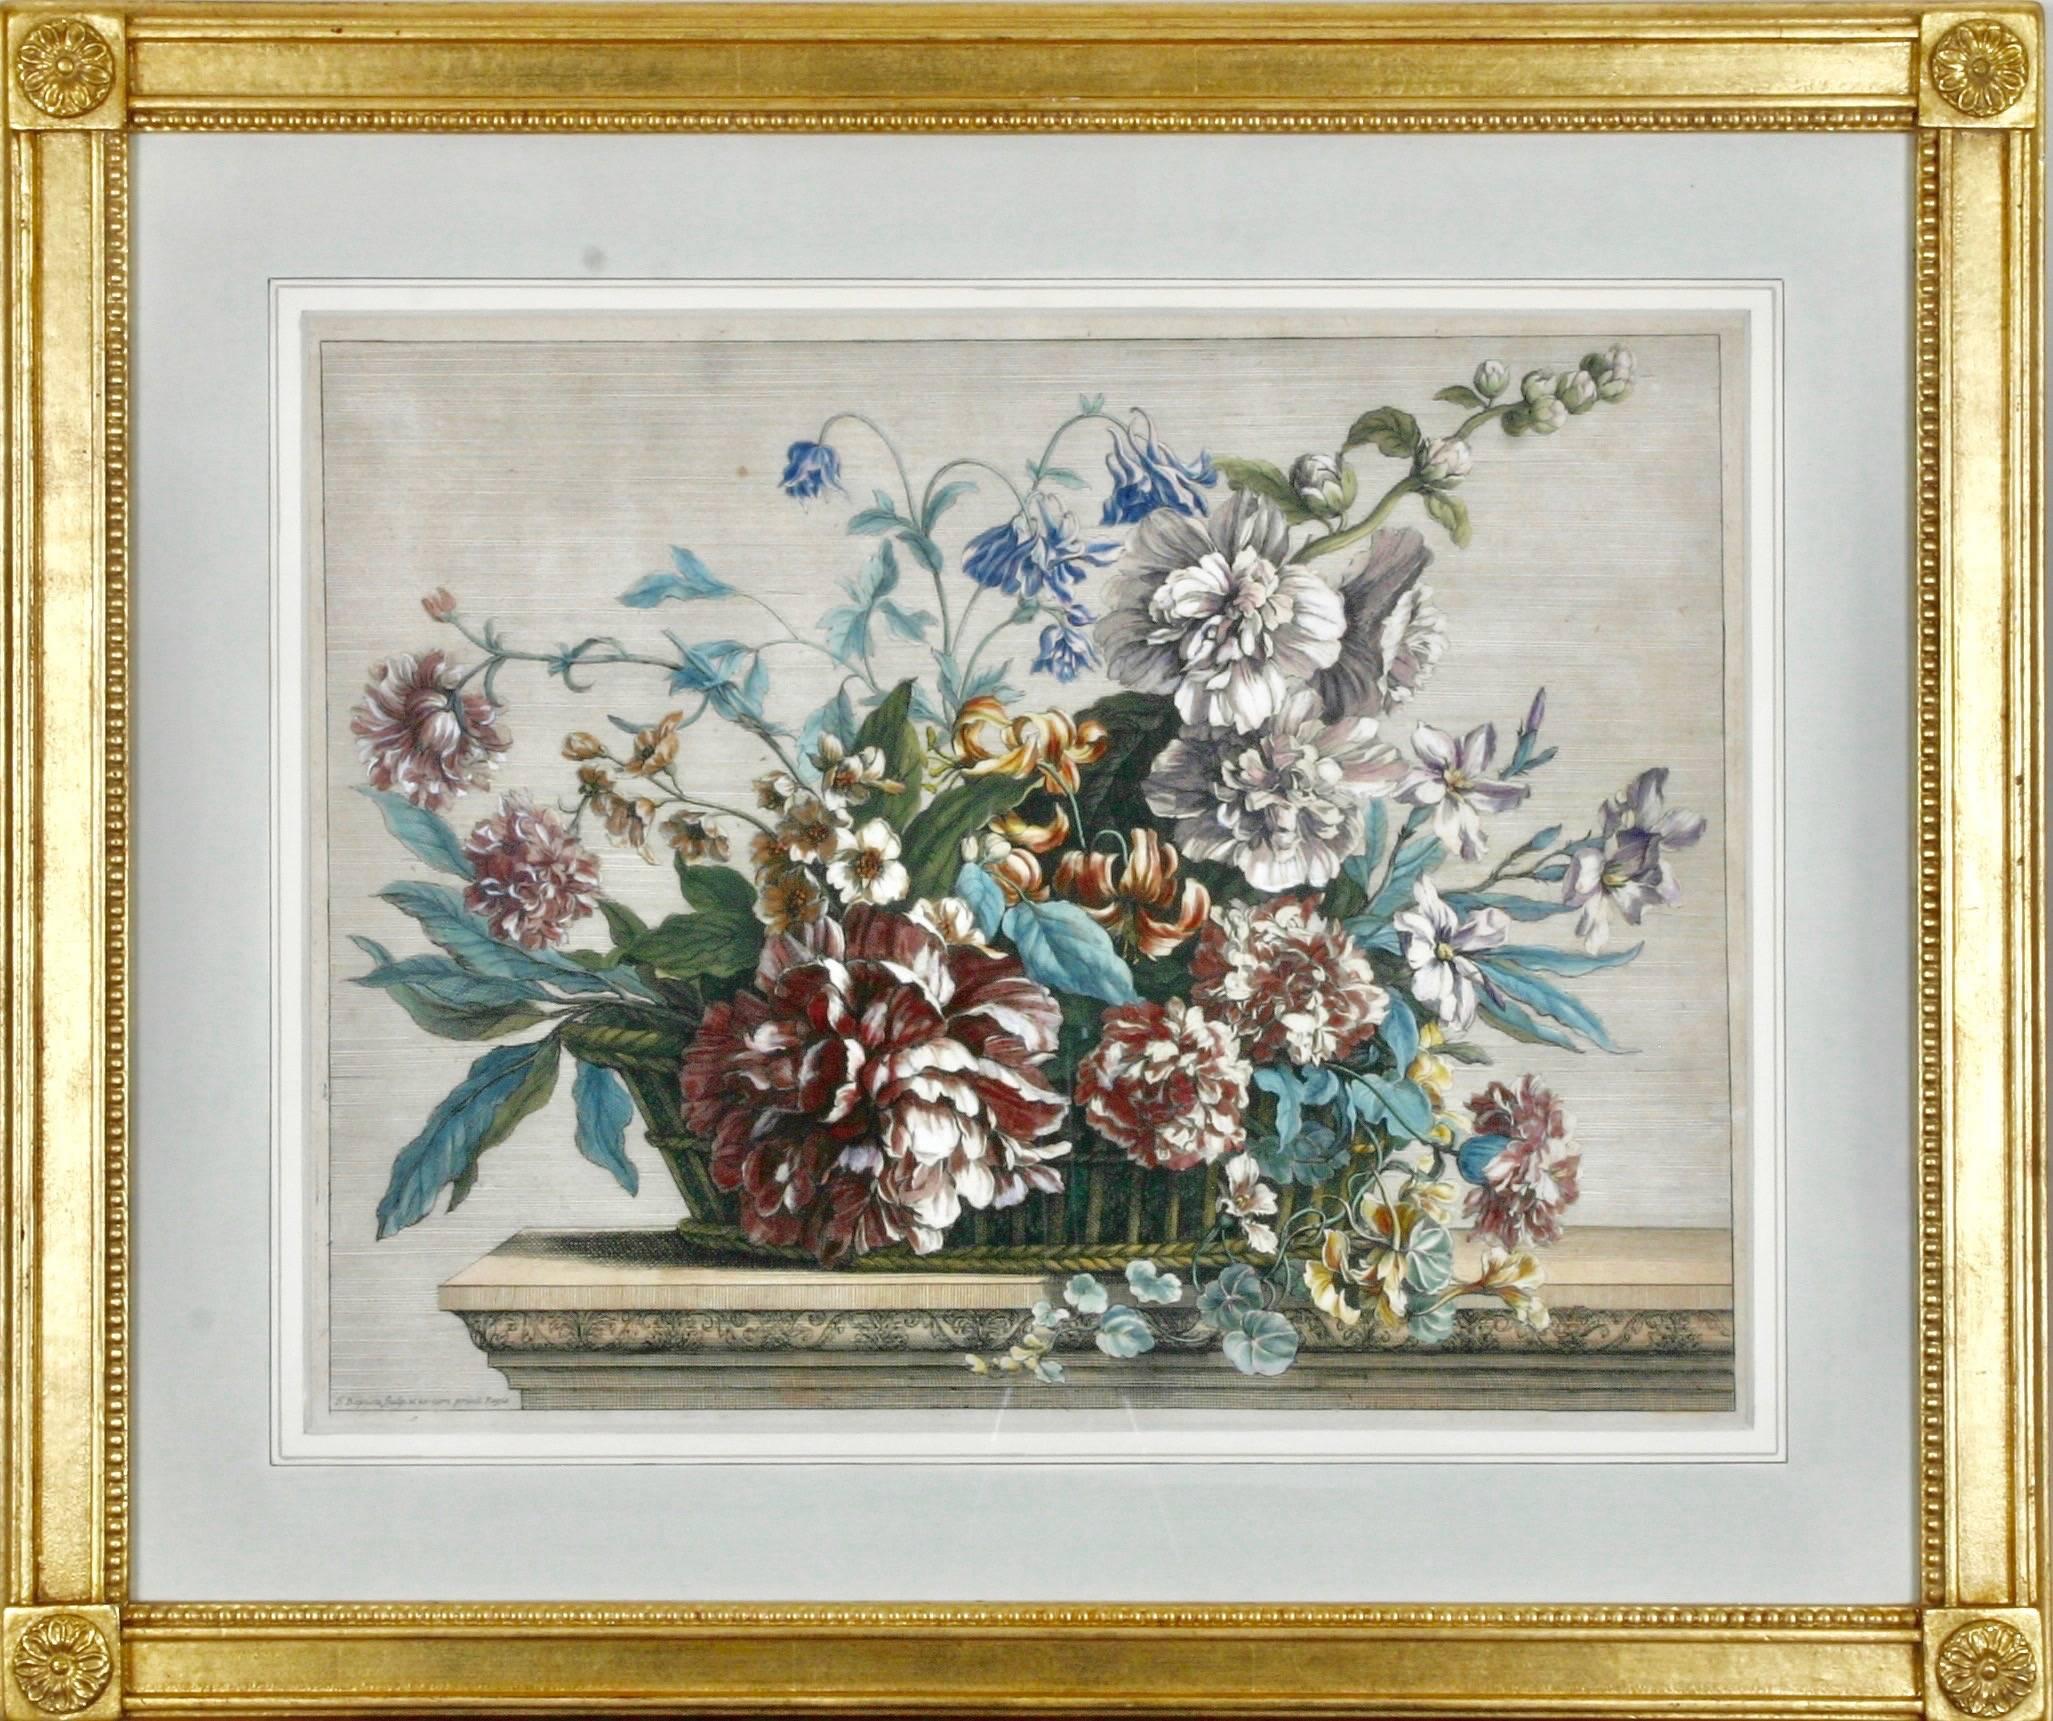 Livres des toutes sortes des fleurs d'apres nature - Print by Jean-Baptiste Monnoyer